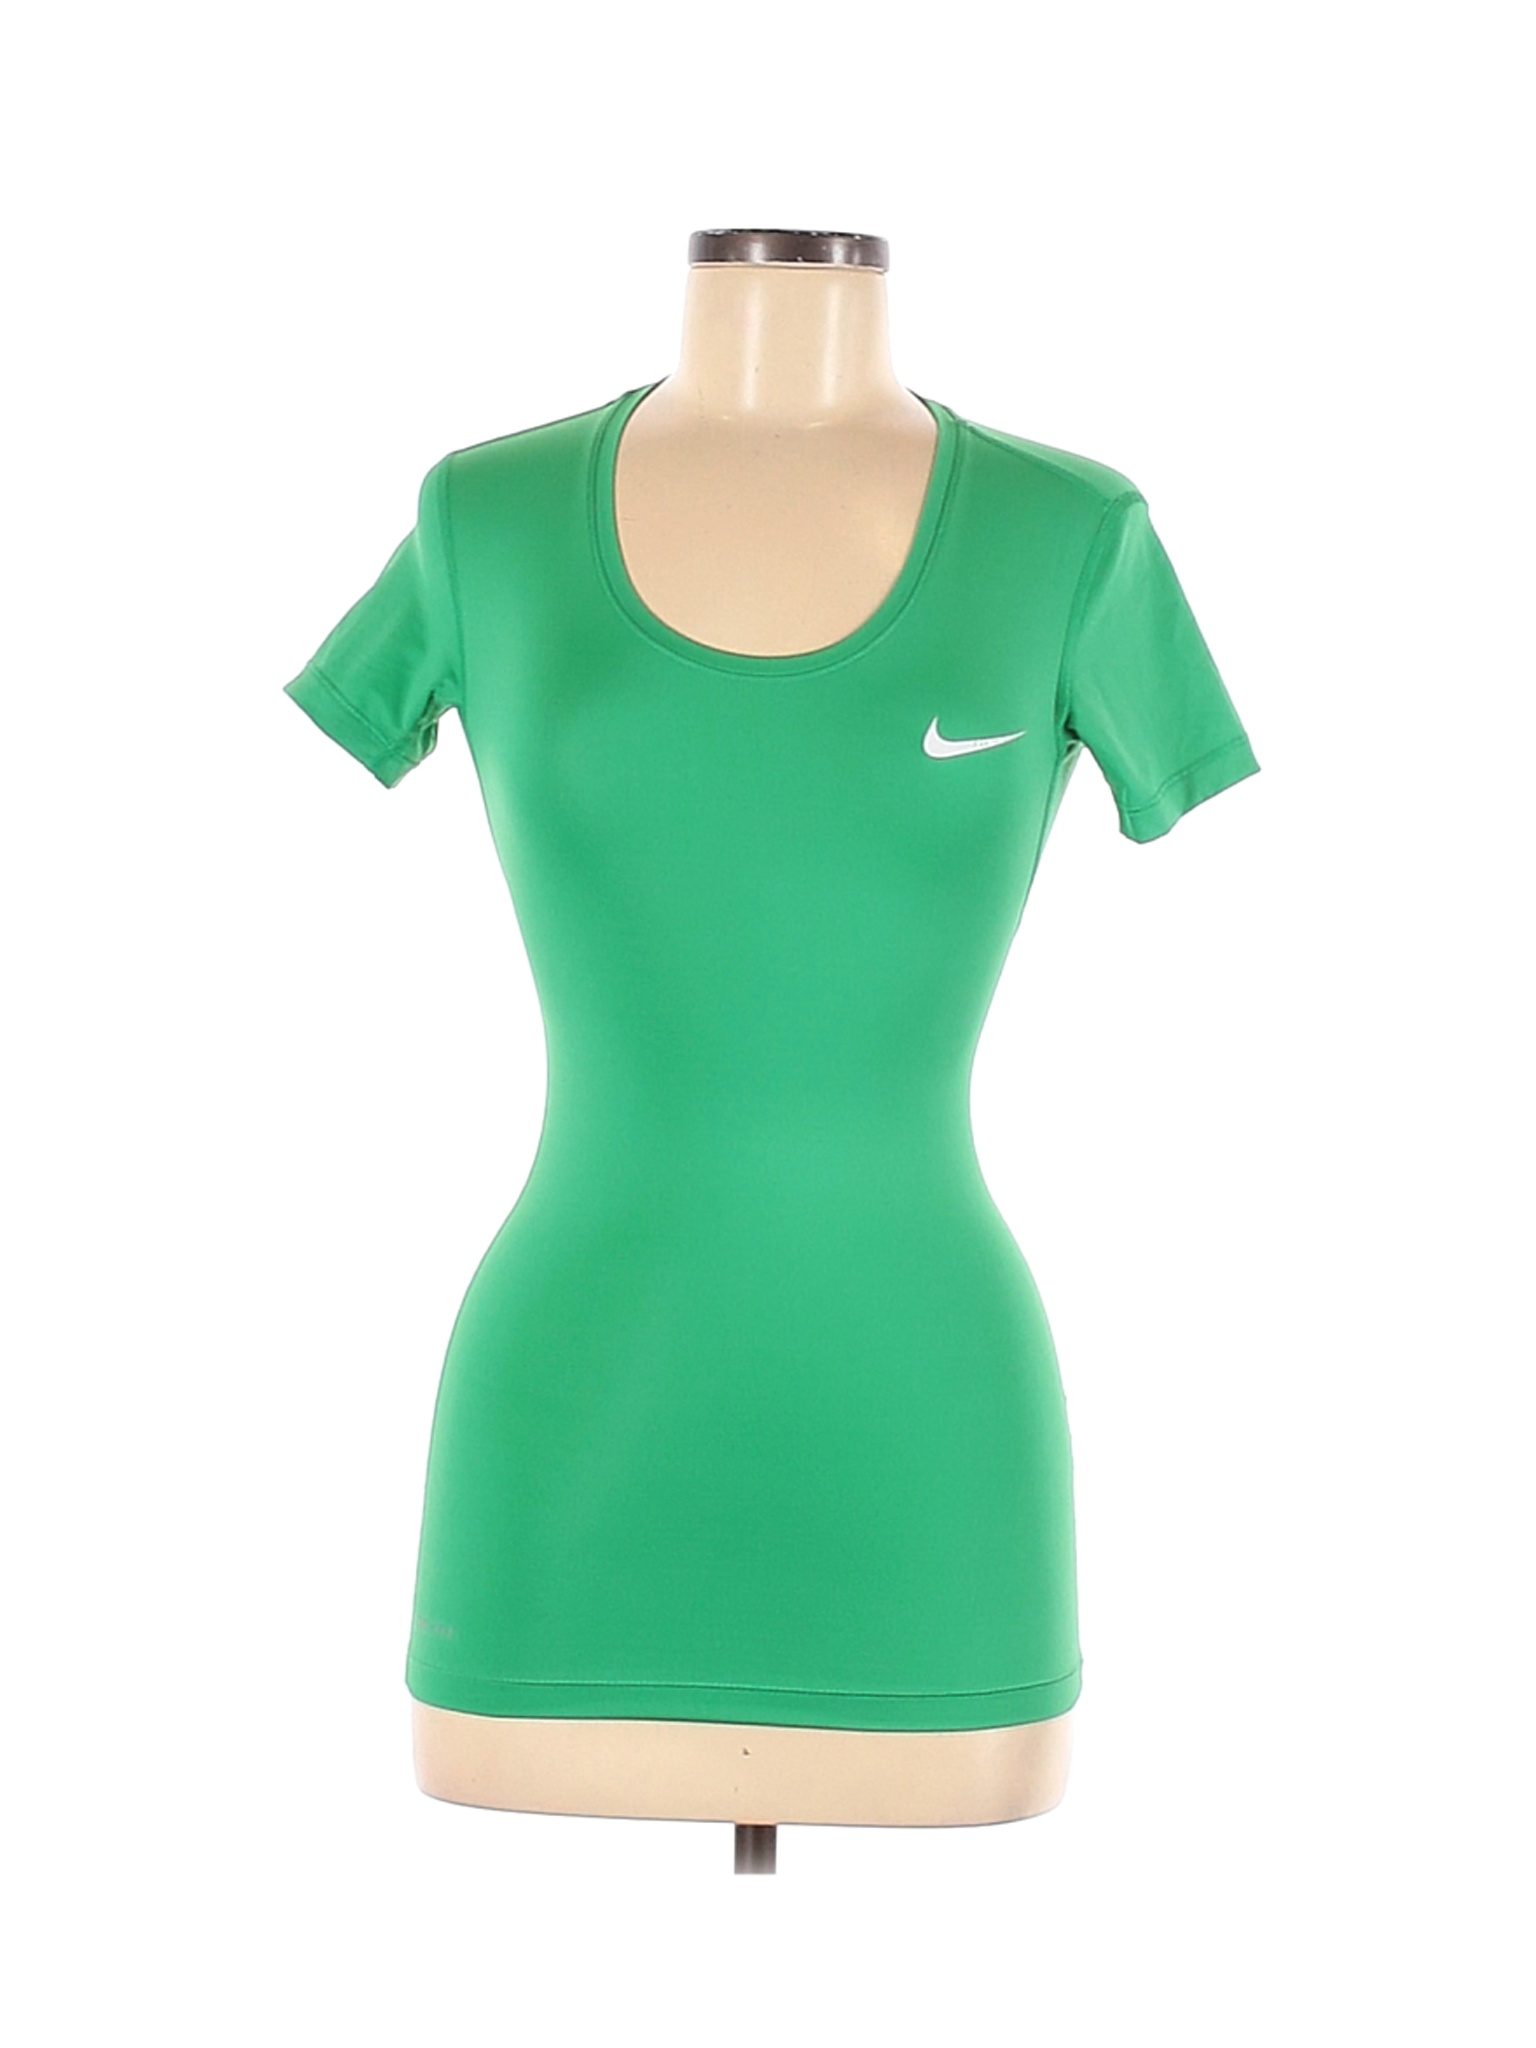 Nike Women Green Active T-Shirt XS | eBay